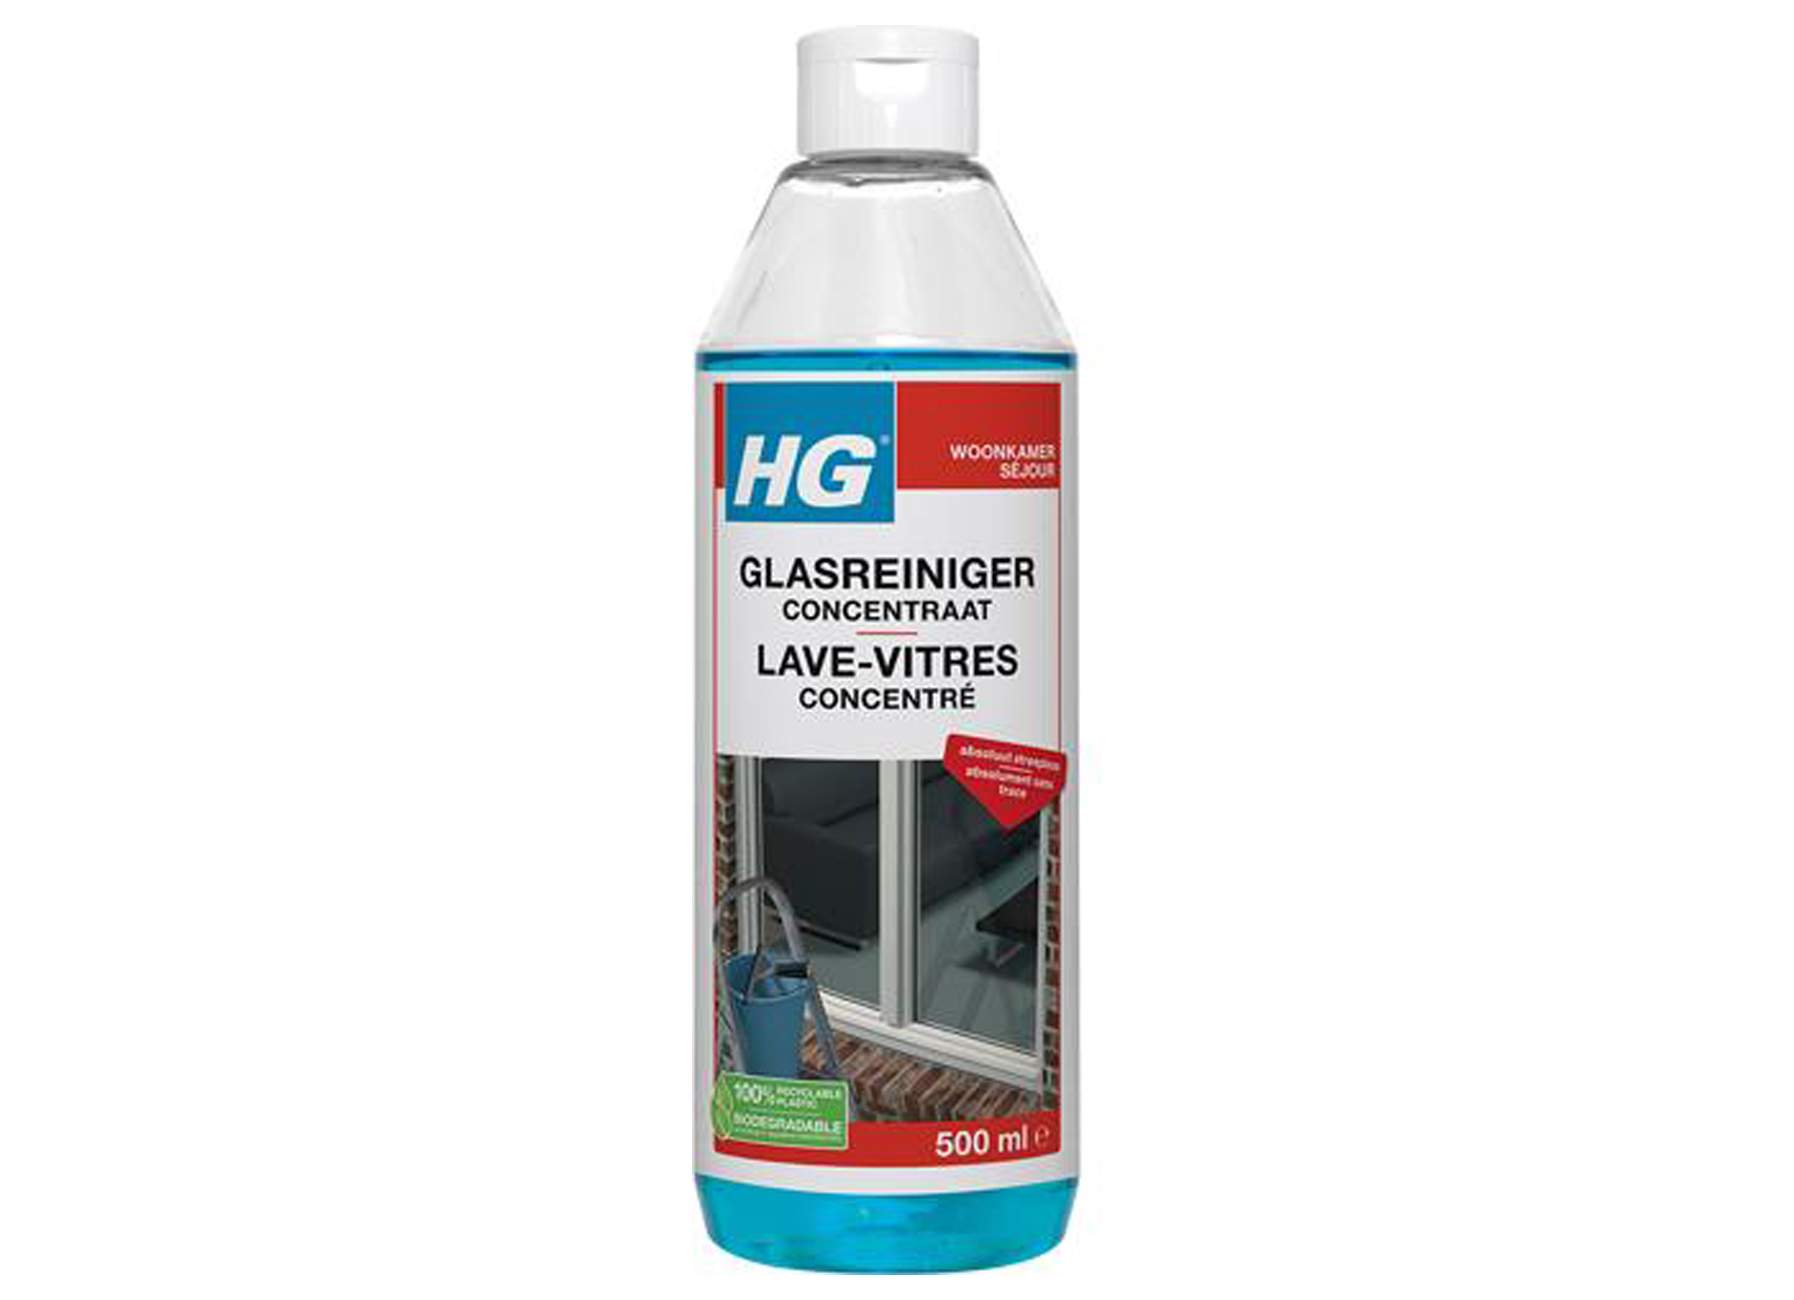 HG anti-tartre concentré (500 ml)